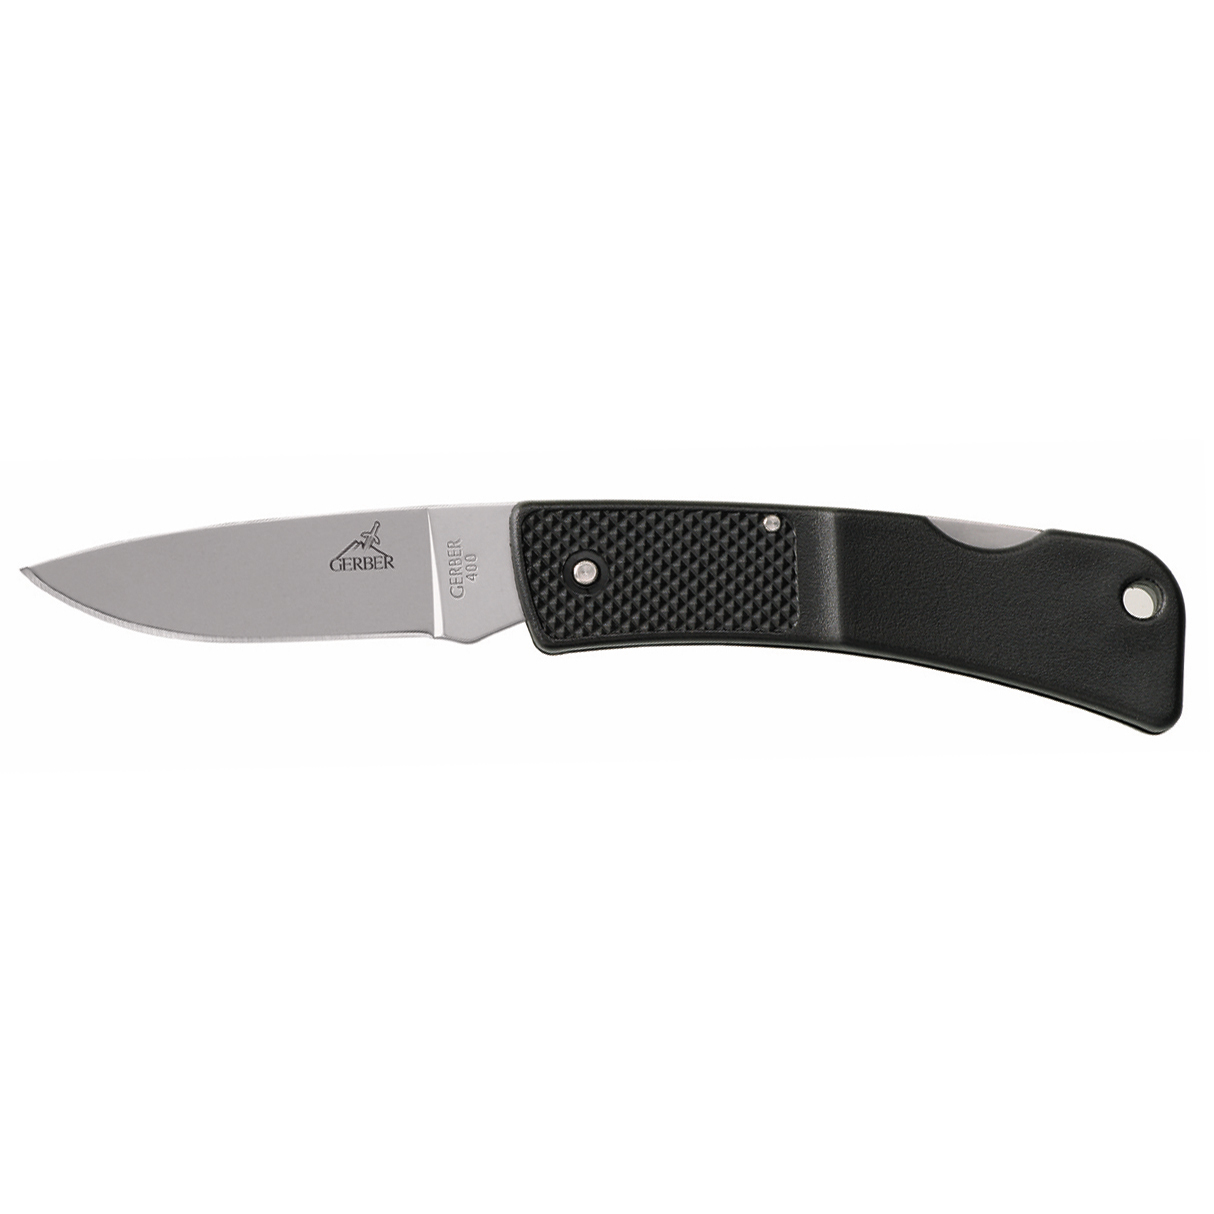 Складной нож  Gerber LST, сталь 420HC, рукоять термопластик GFN, черный - фото 4